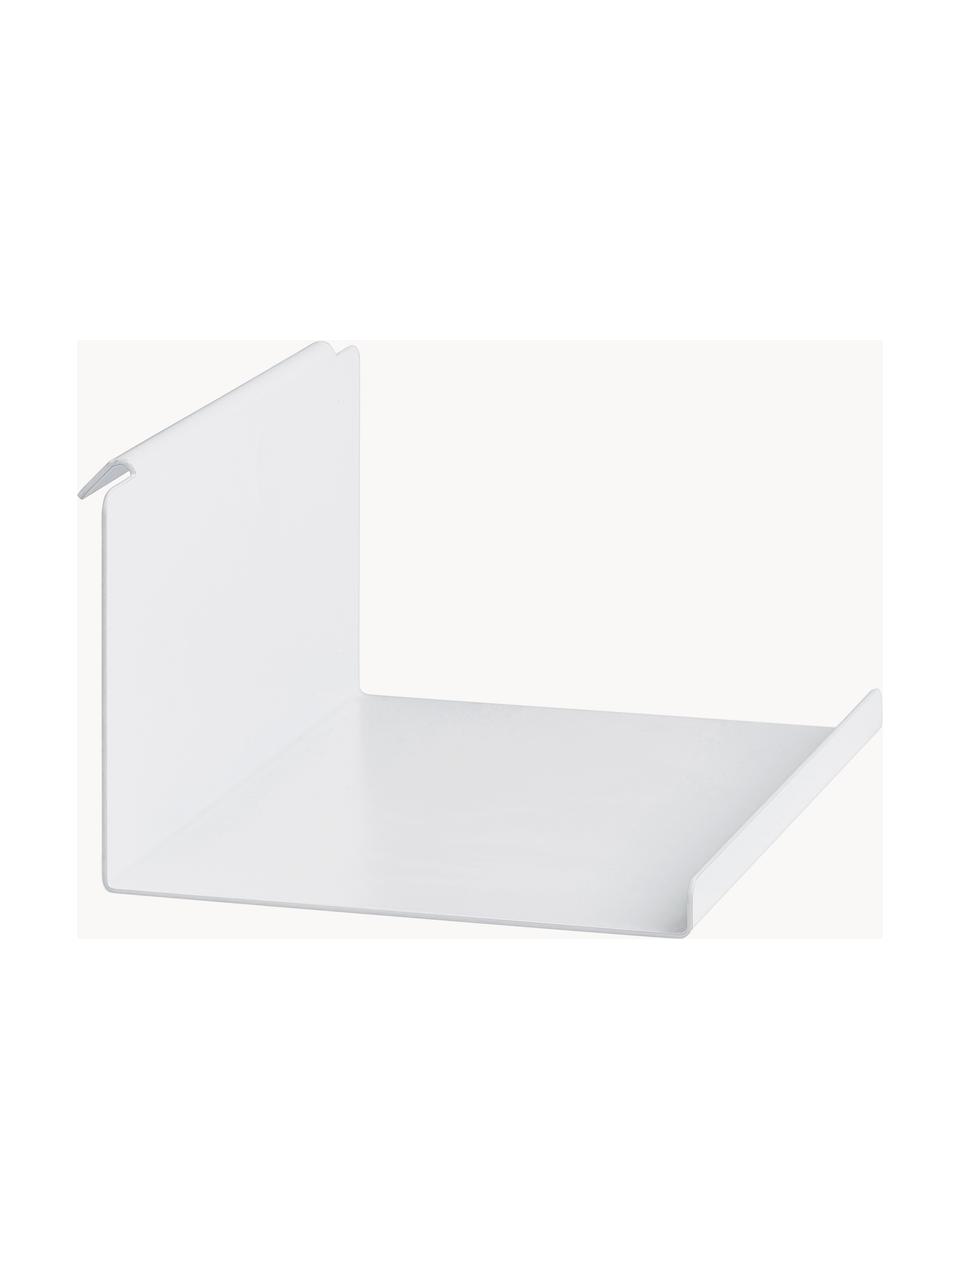 Stahl-Einlegeboden Flex, Stahl, beschichtet, Weiß, B 32 x H 13 cm